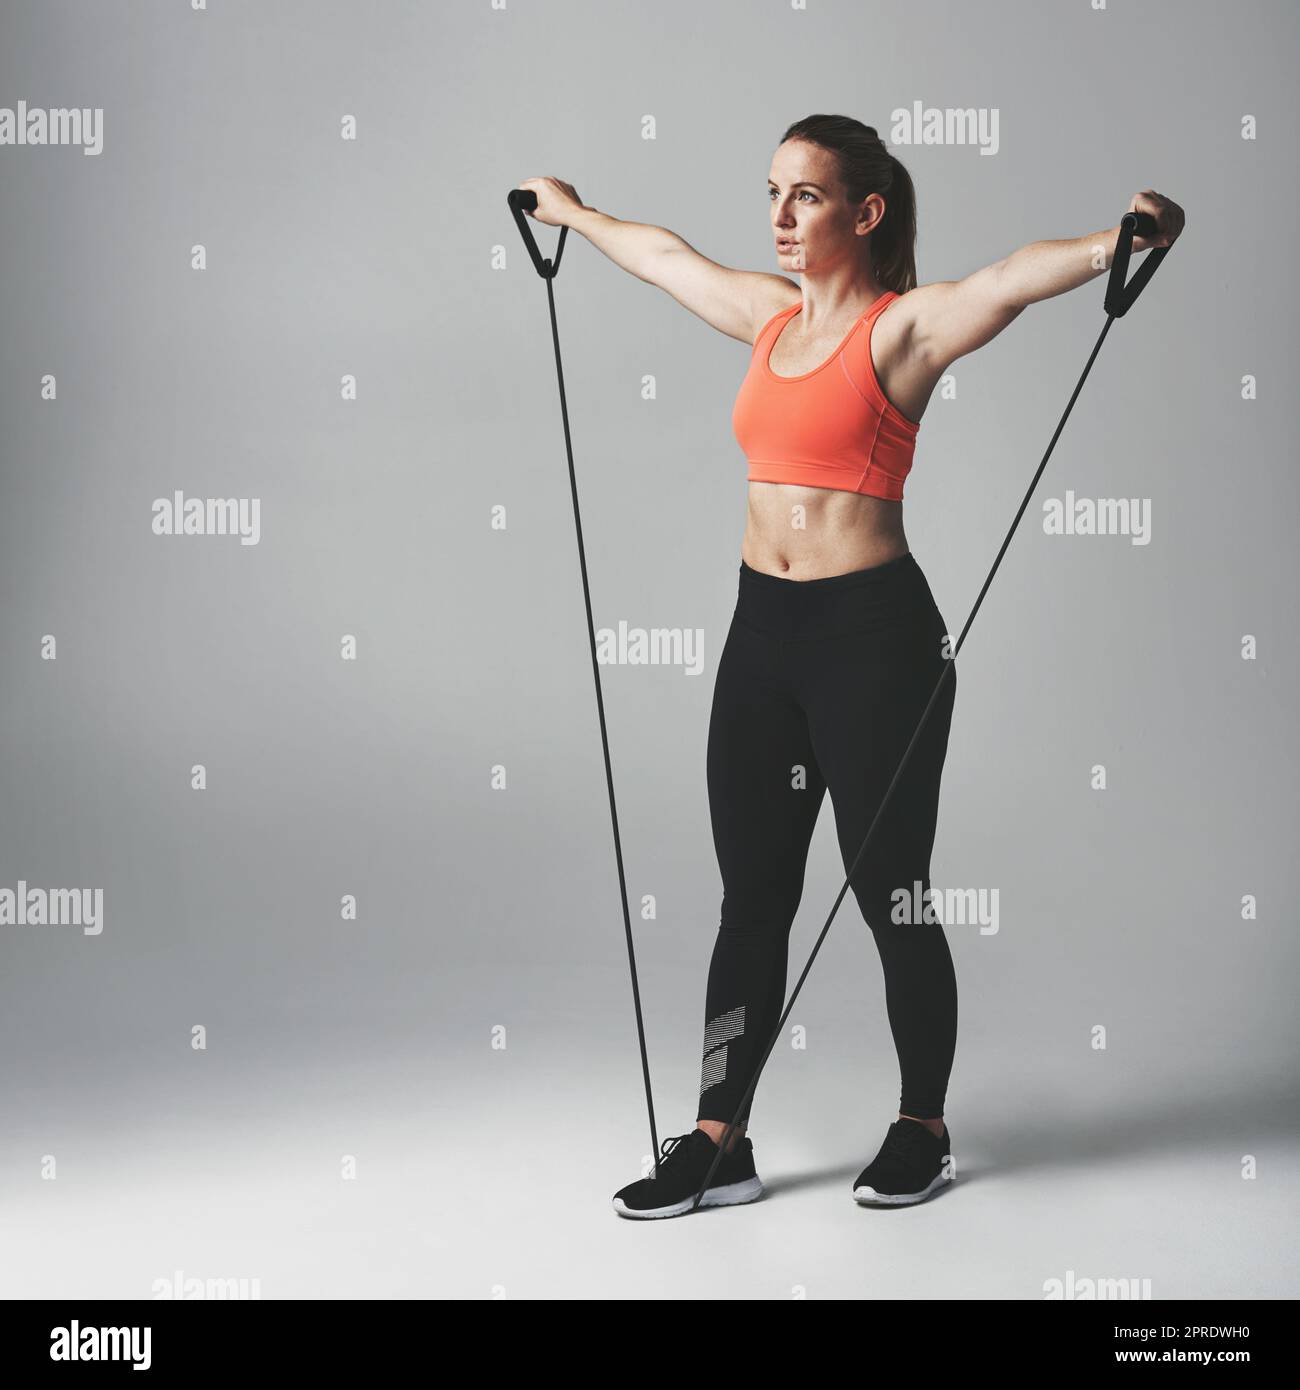 La formation de résistance est bonne pour tout le corps. Photo en studio d'une jeune femme sportive qui s'efforce avec un bracelet de résistance sur fond gris. Banque D'Images